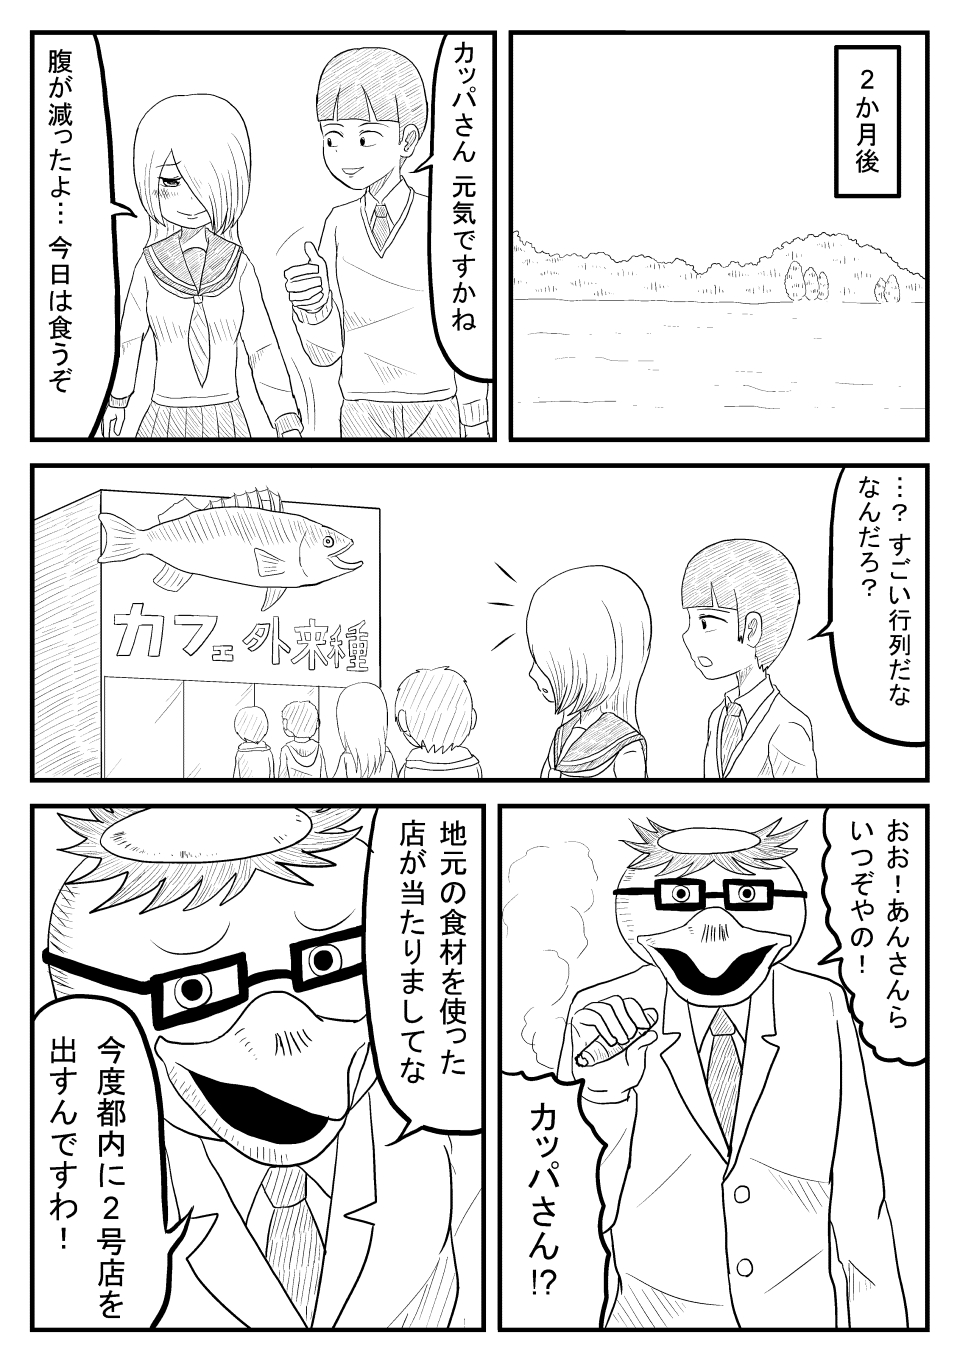 漫画「UMA研究会」